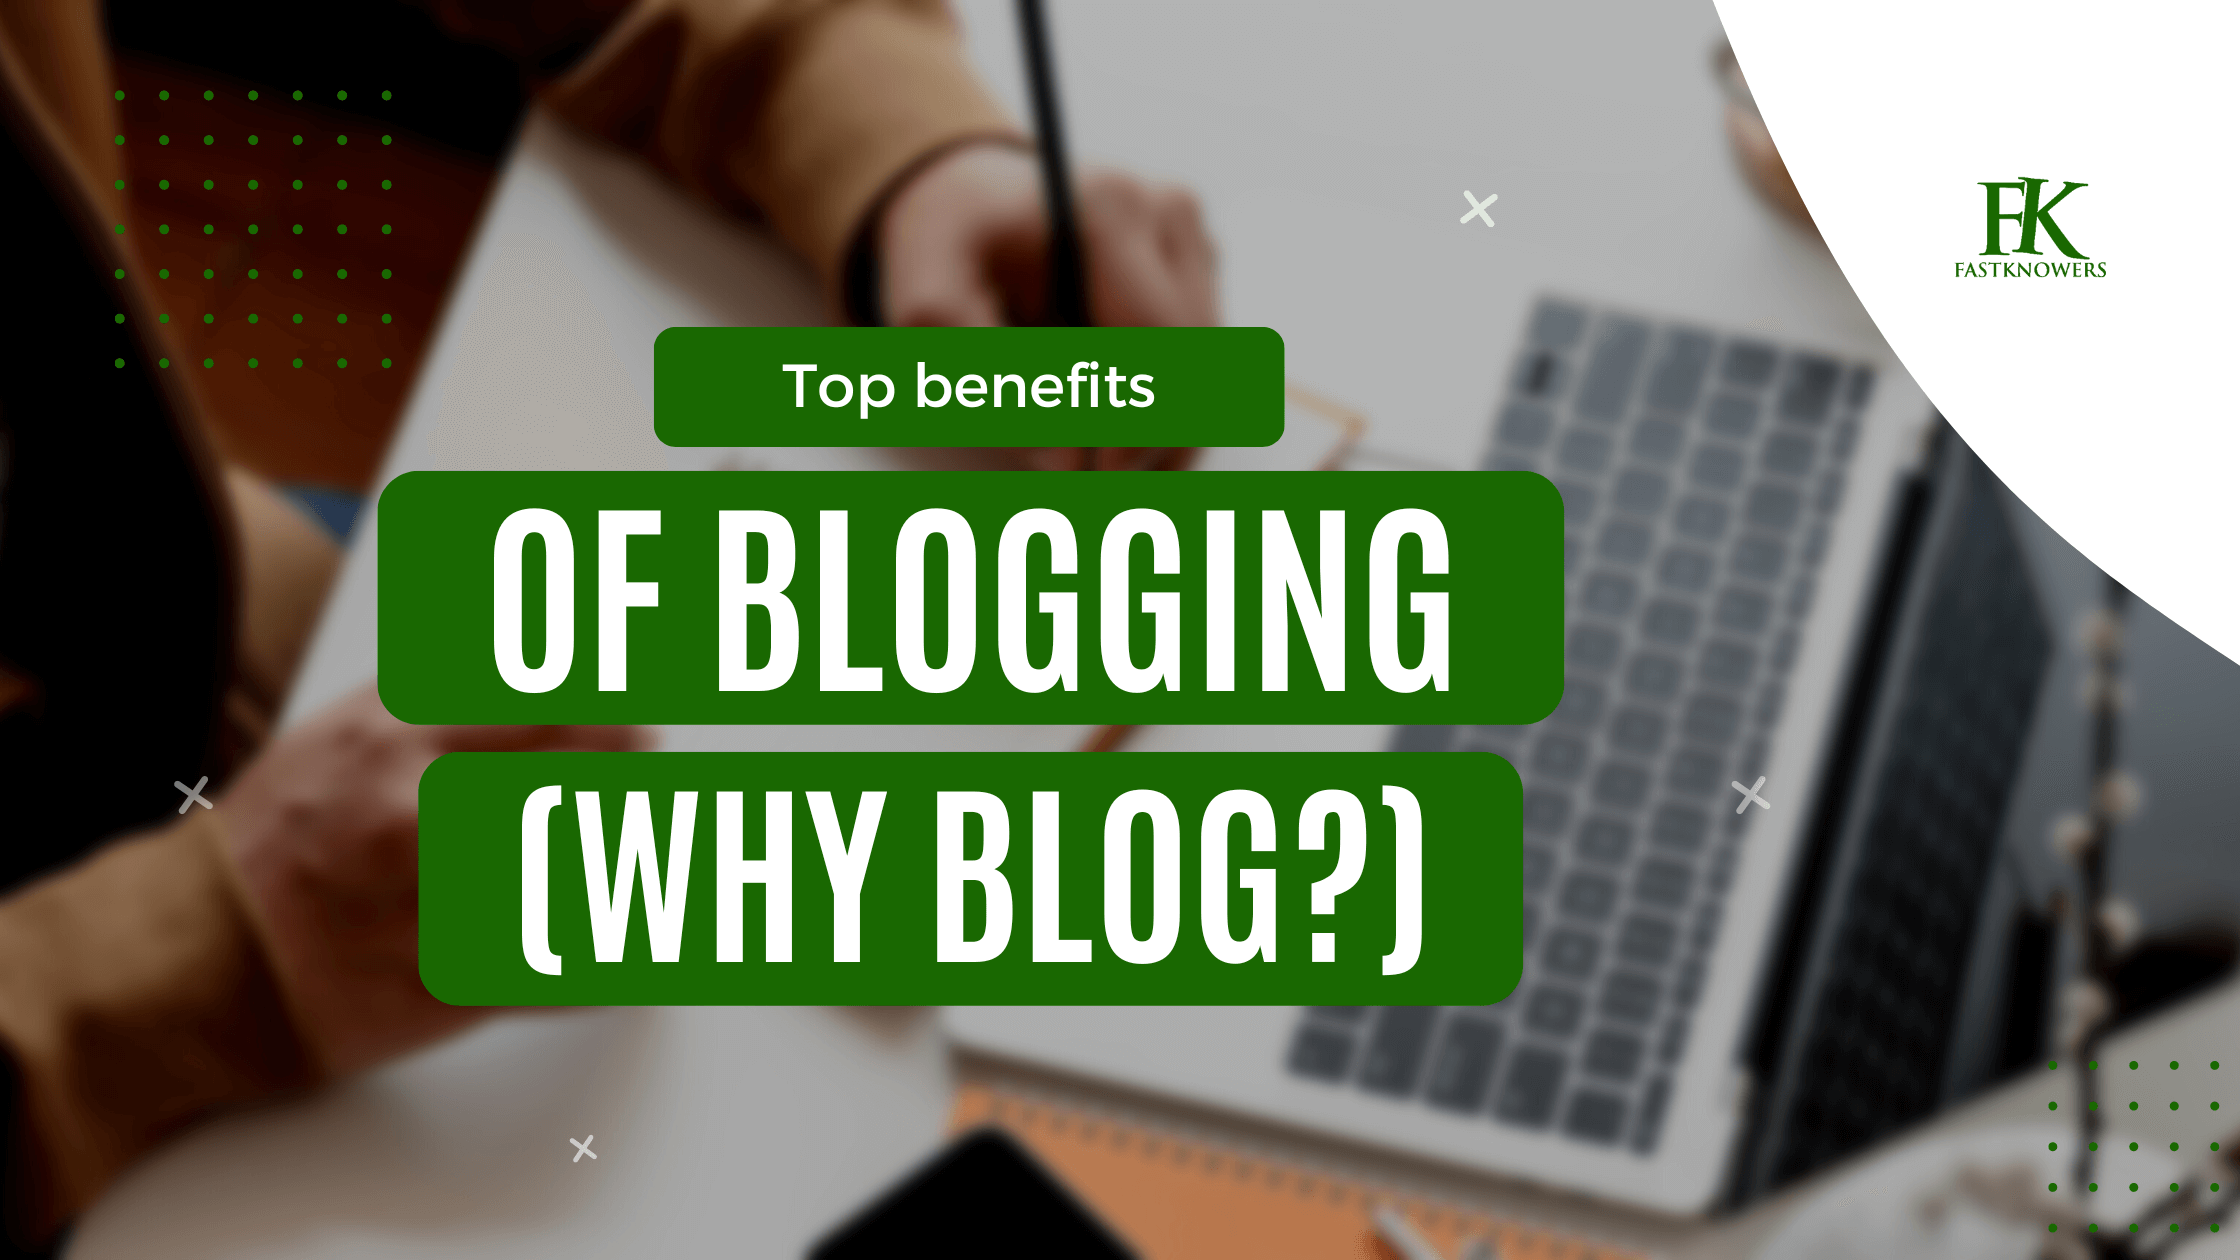 Top benefits of blogging